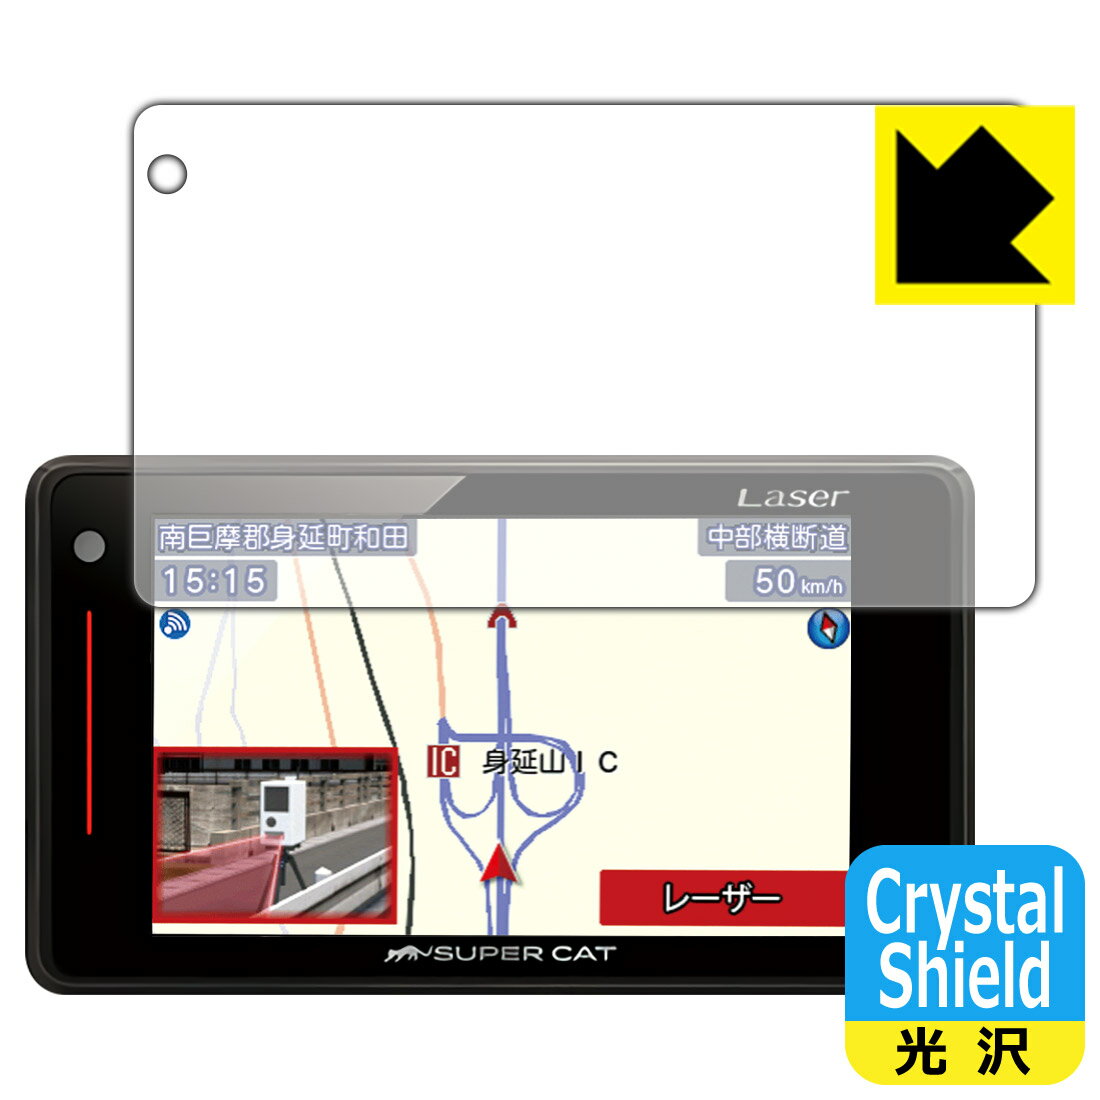 Crystal Shield 졼&졼õε SUPER CAT LS71a/LS330/LS340/LS340L/LS720/LS730  ¤ľ